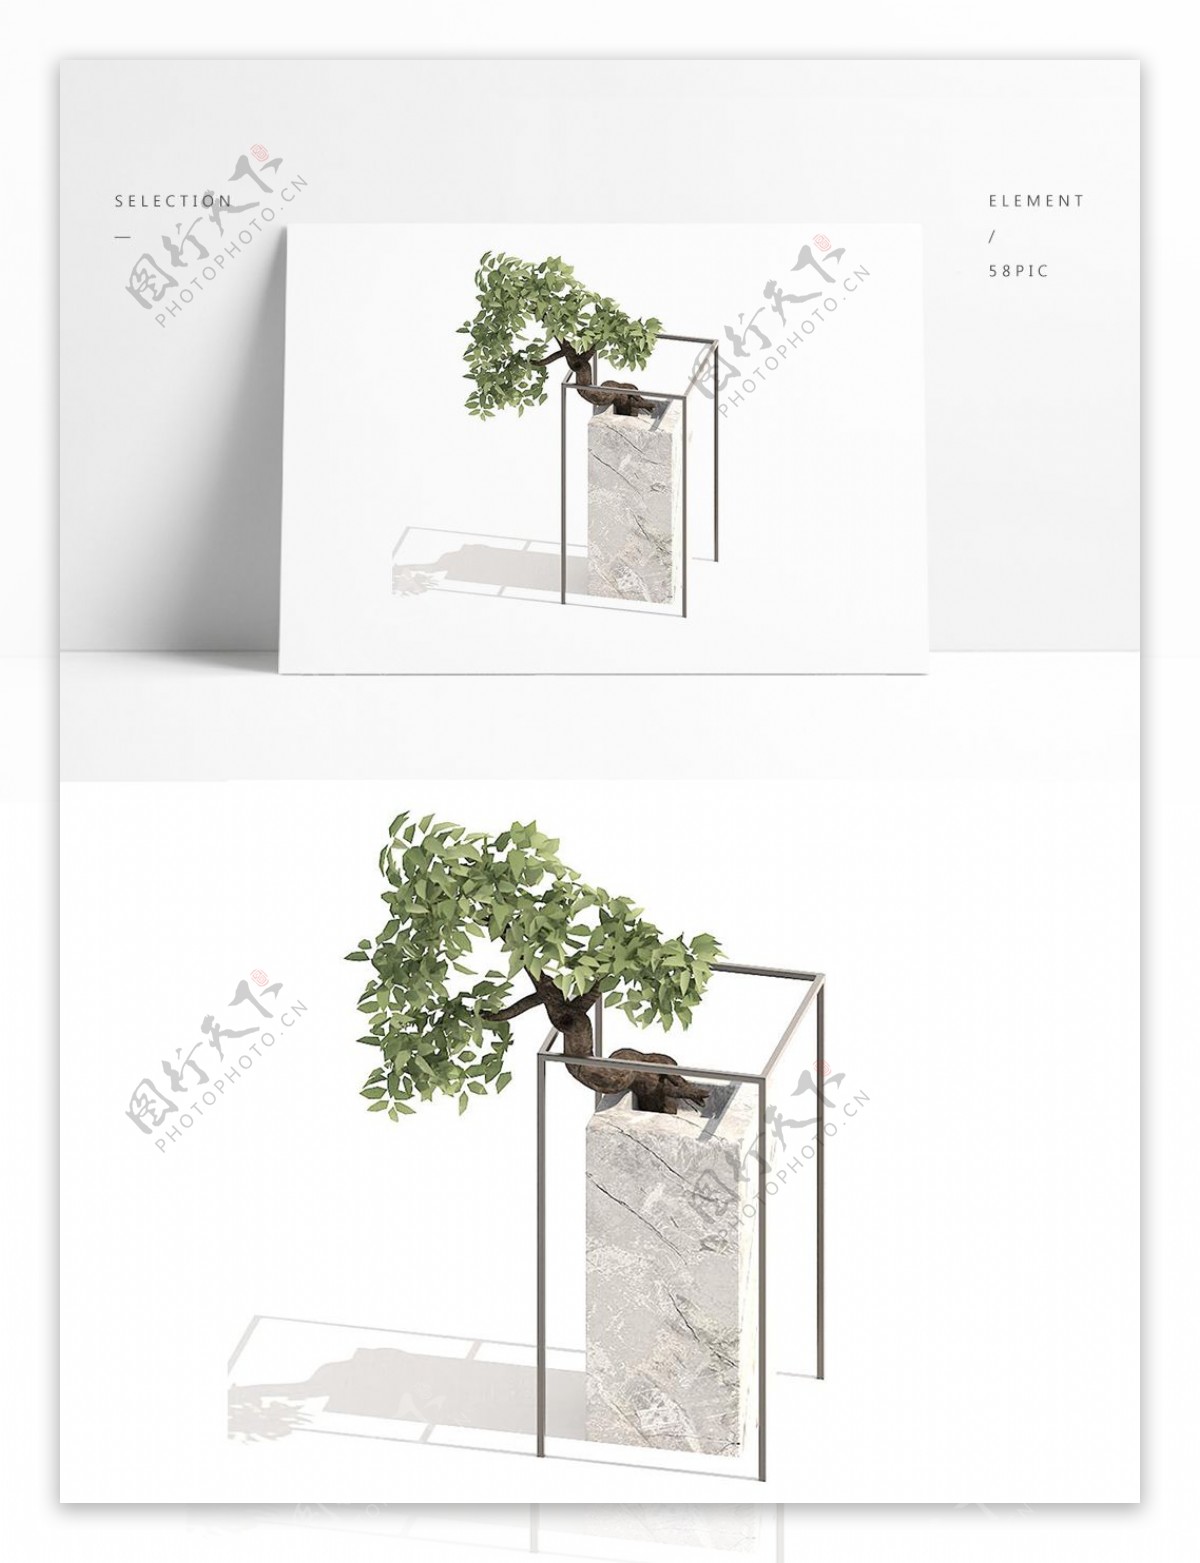 通用室内盆栽模型